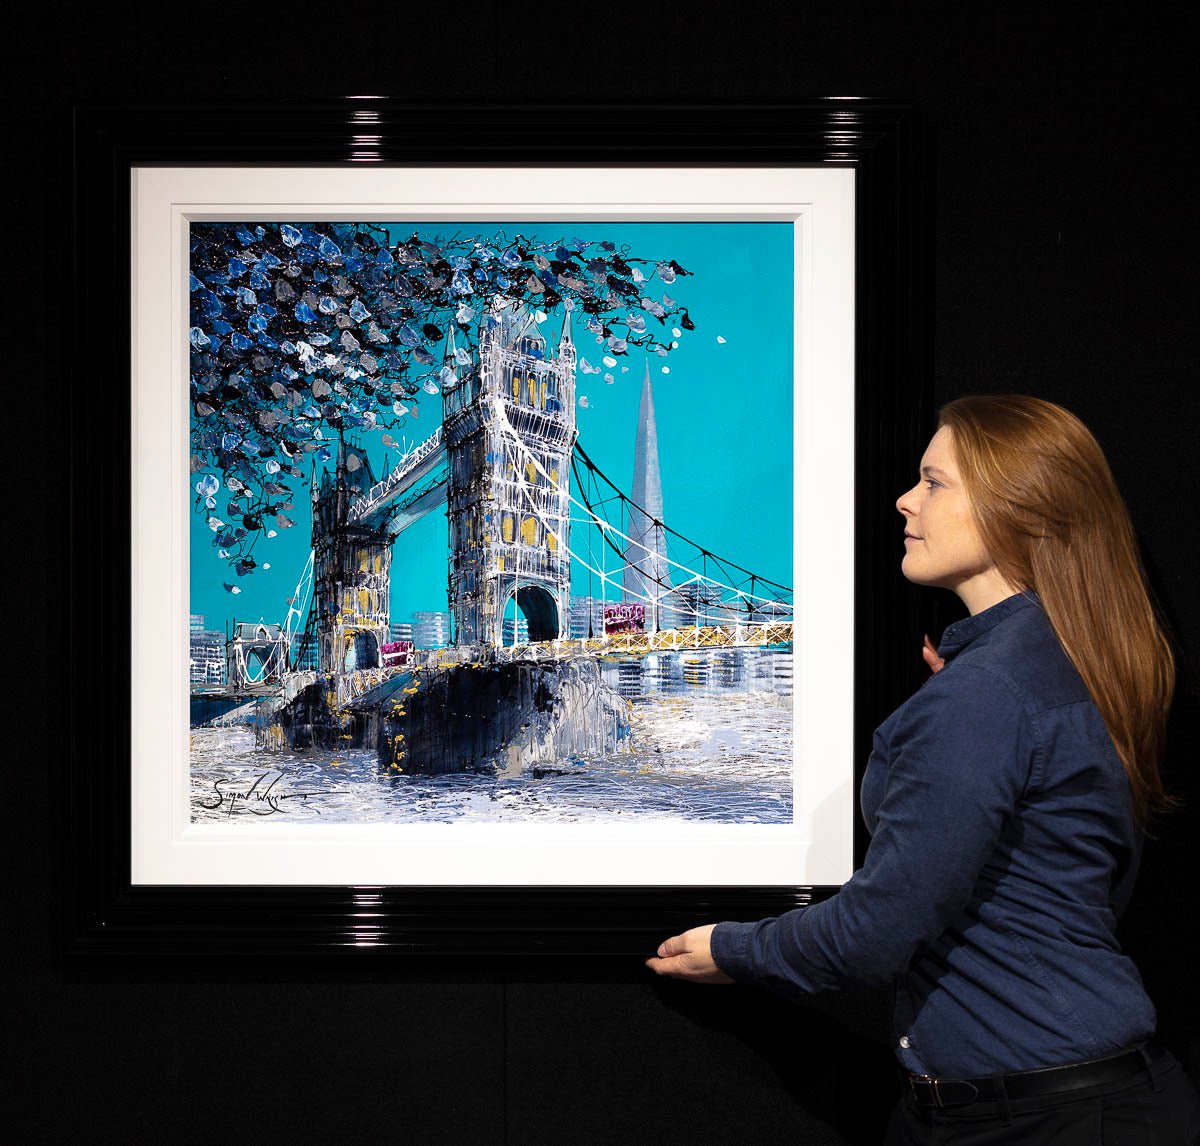 Views over London Bridge - Original Simon Wright Original